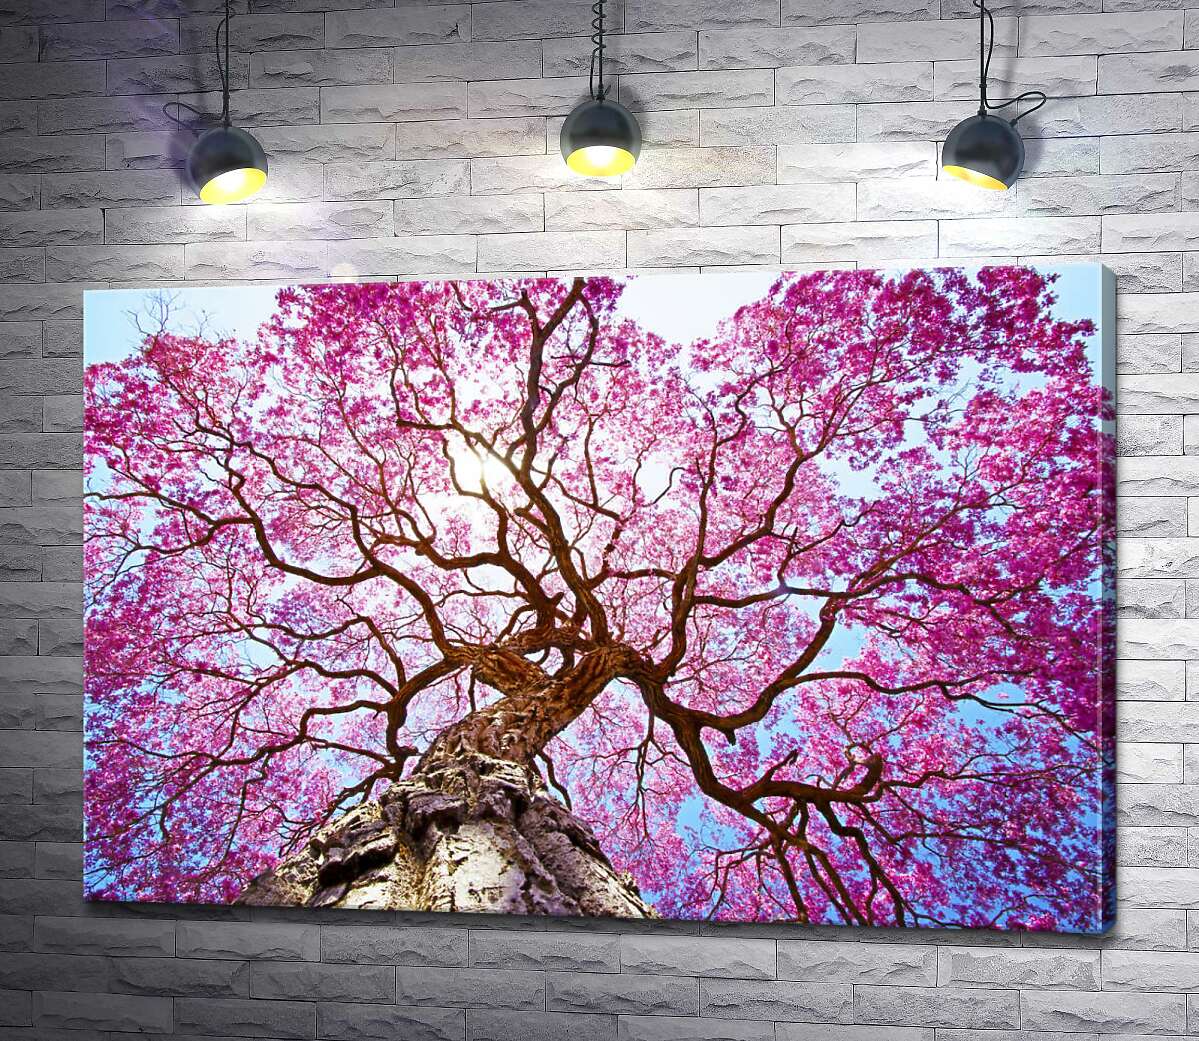 картина Густая крона высокого дерева покрыта розовым цветением